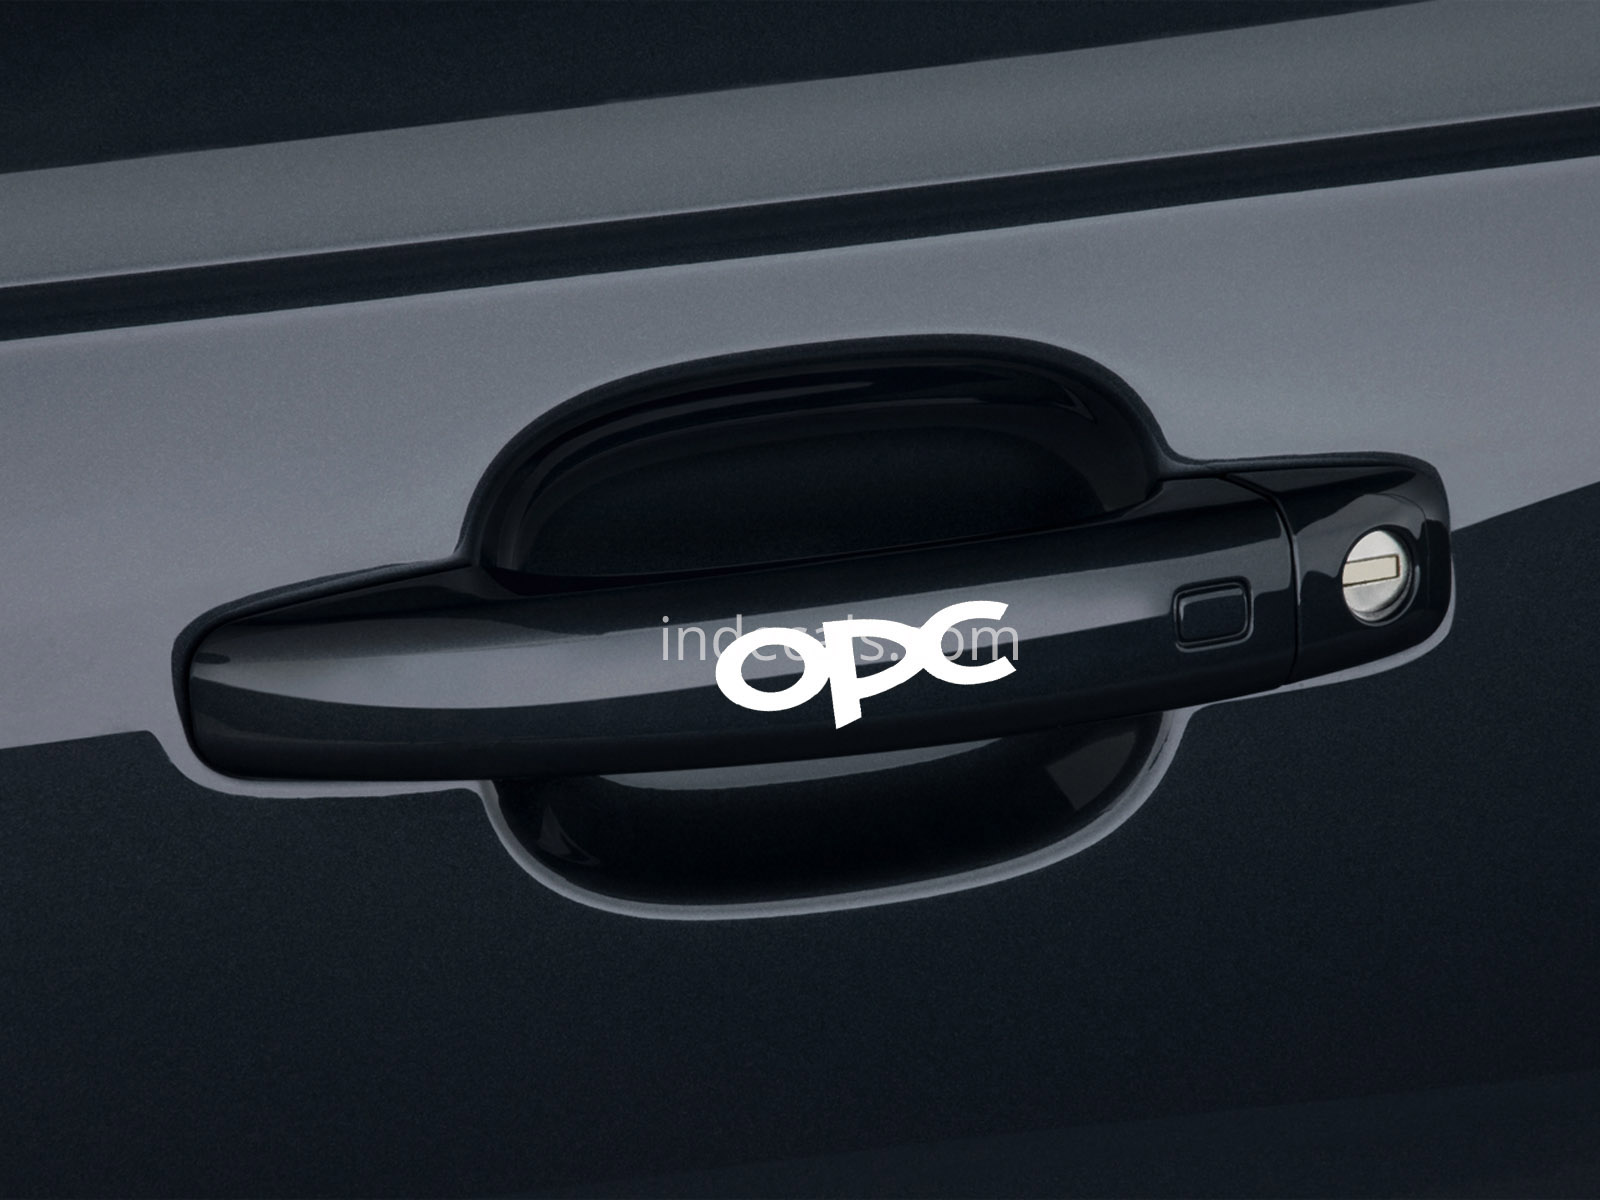 6 x Opel OPC Stickers for Door Handles - White